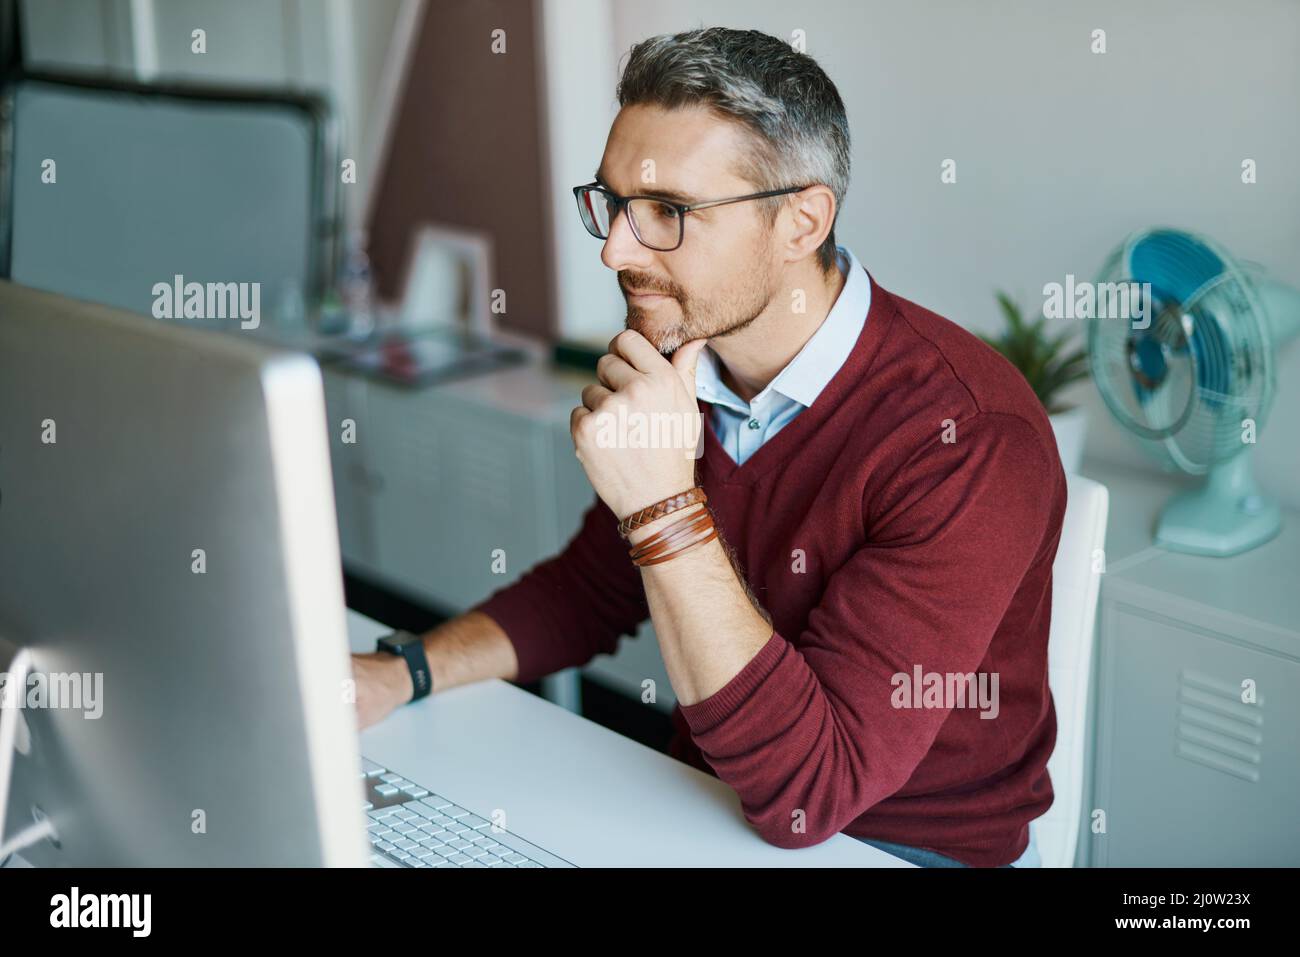 En pensant à ses idées innovantes. Photo d'un homme d'affaires mature travaillant sur un ordinateur dans un bureau. Banque D'Images